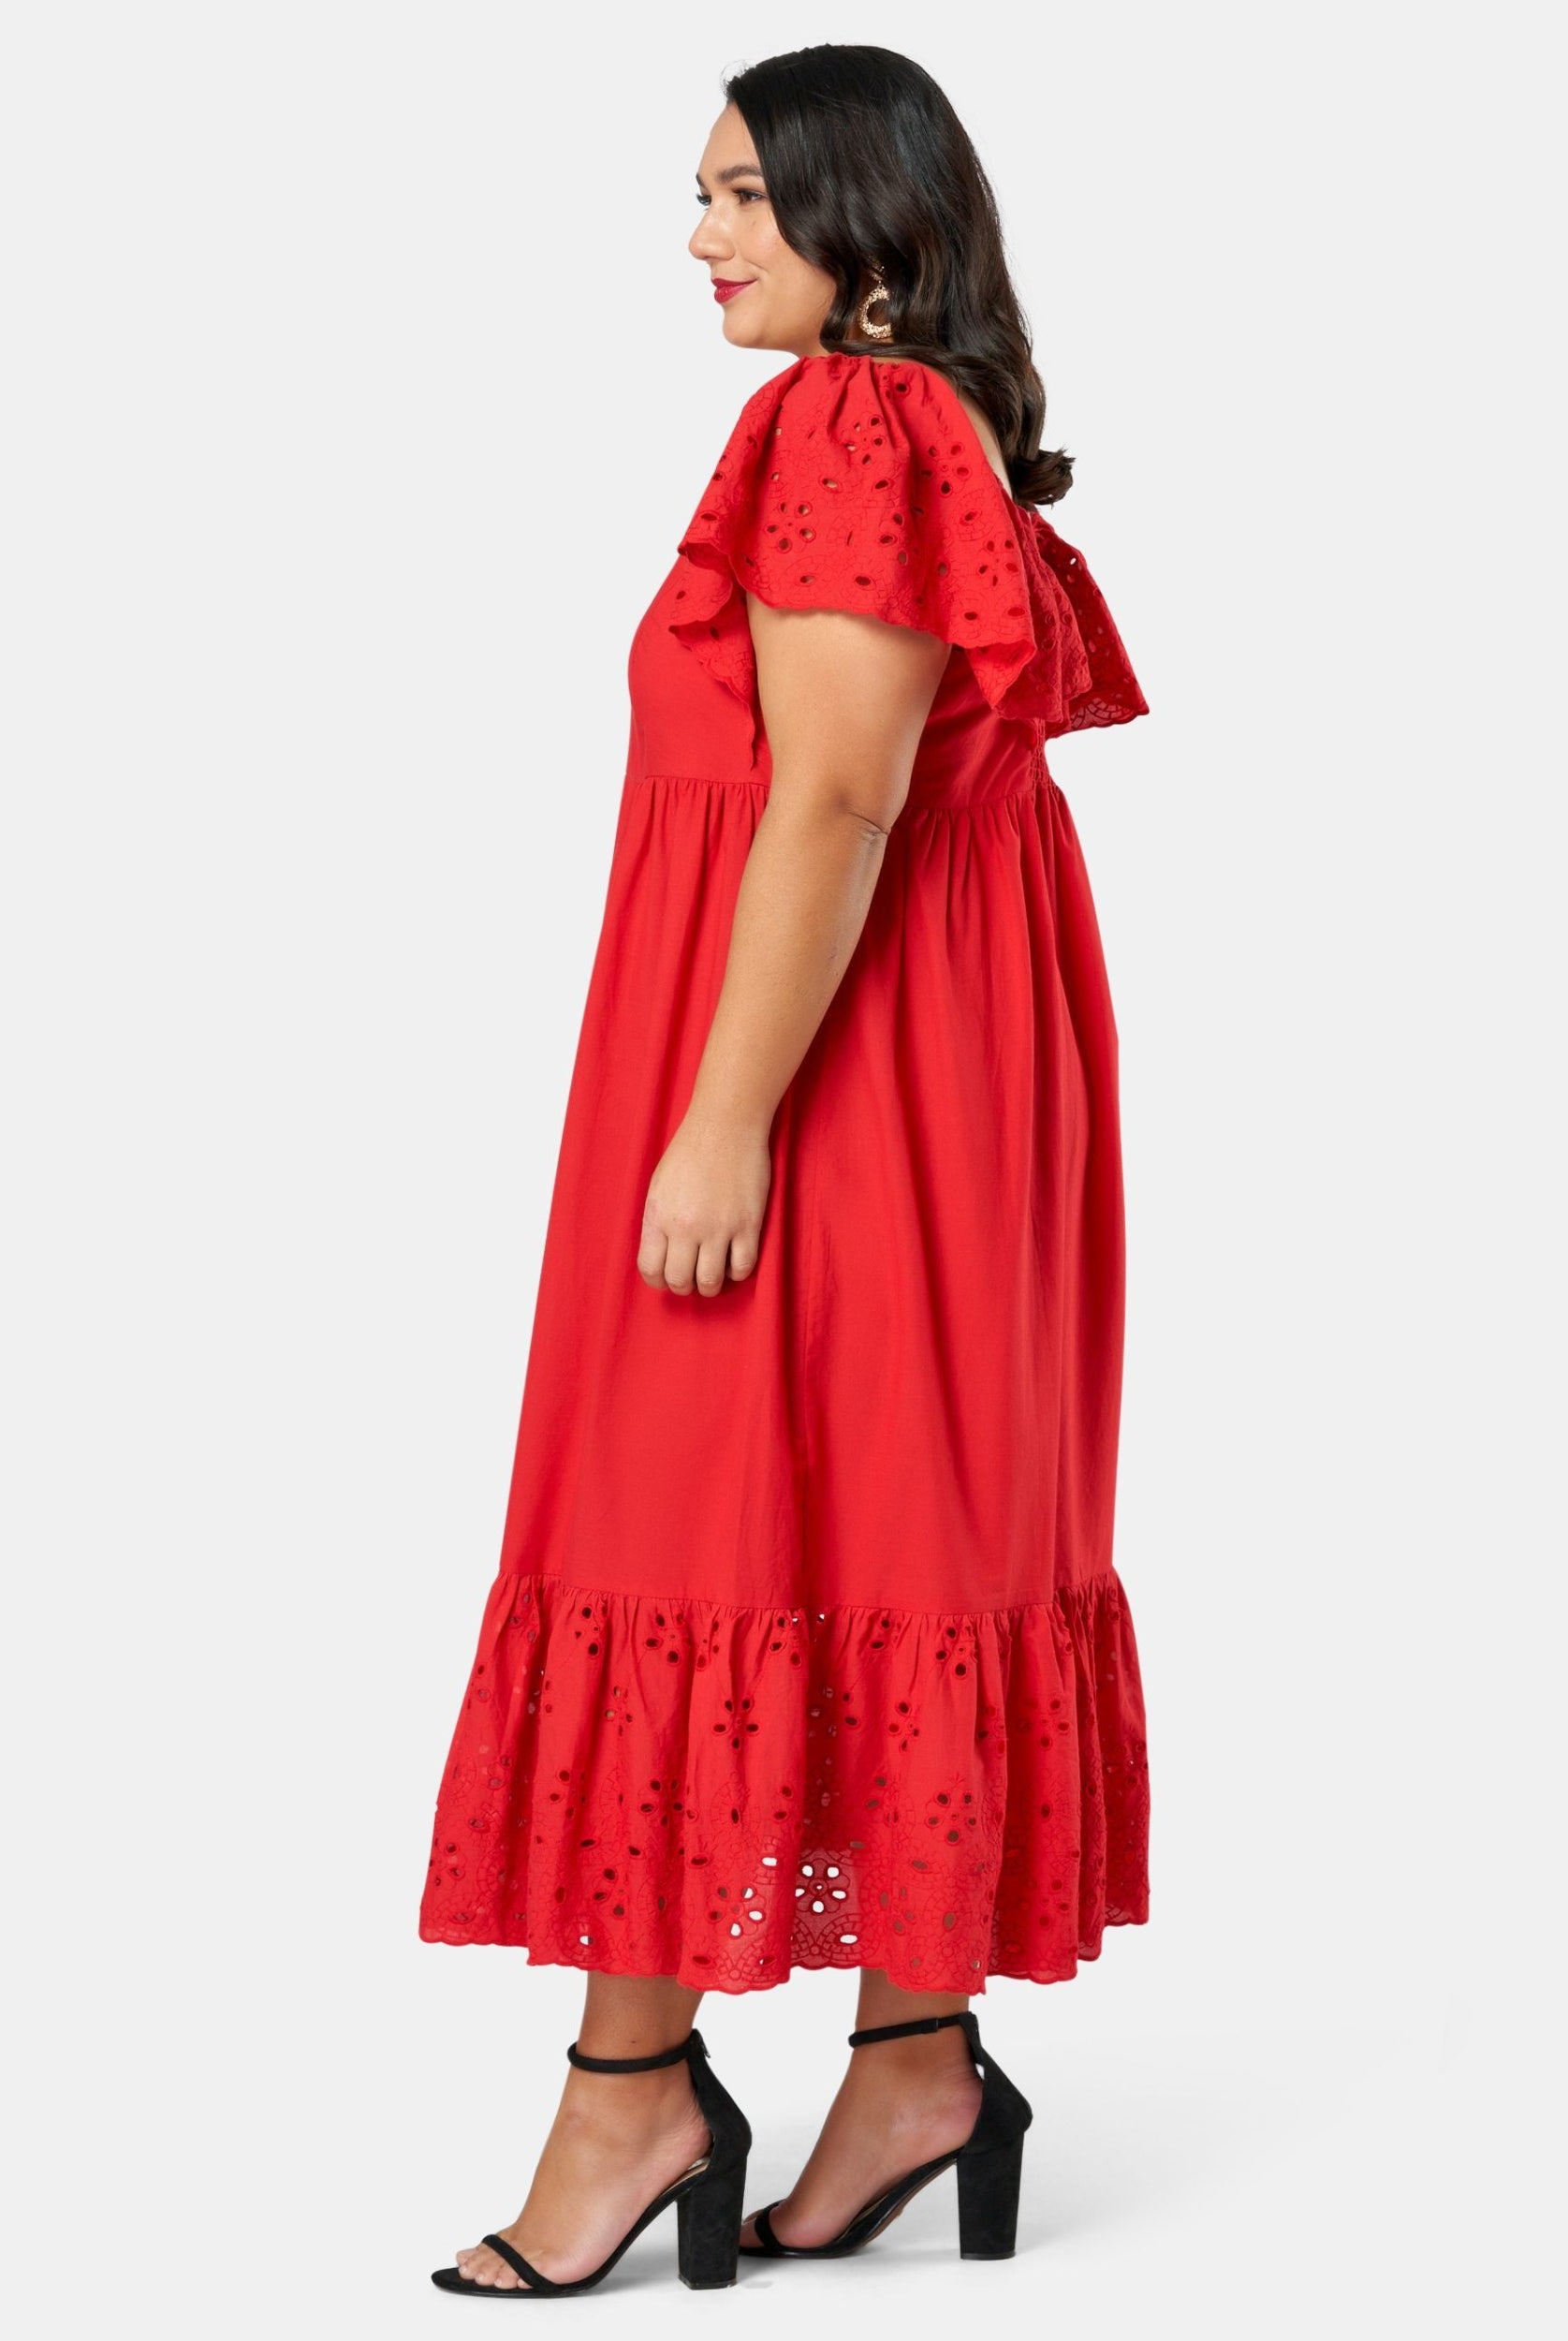 Model wearing red dress